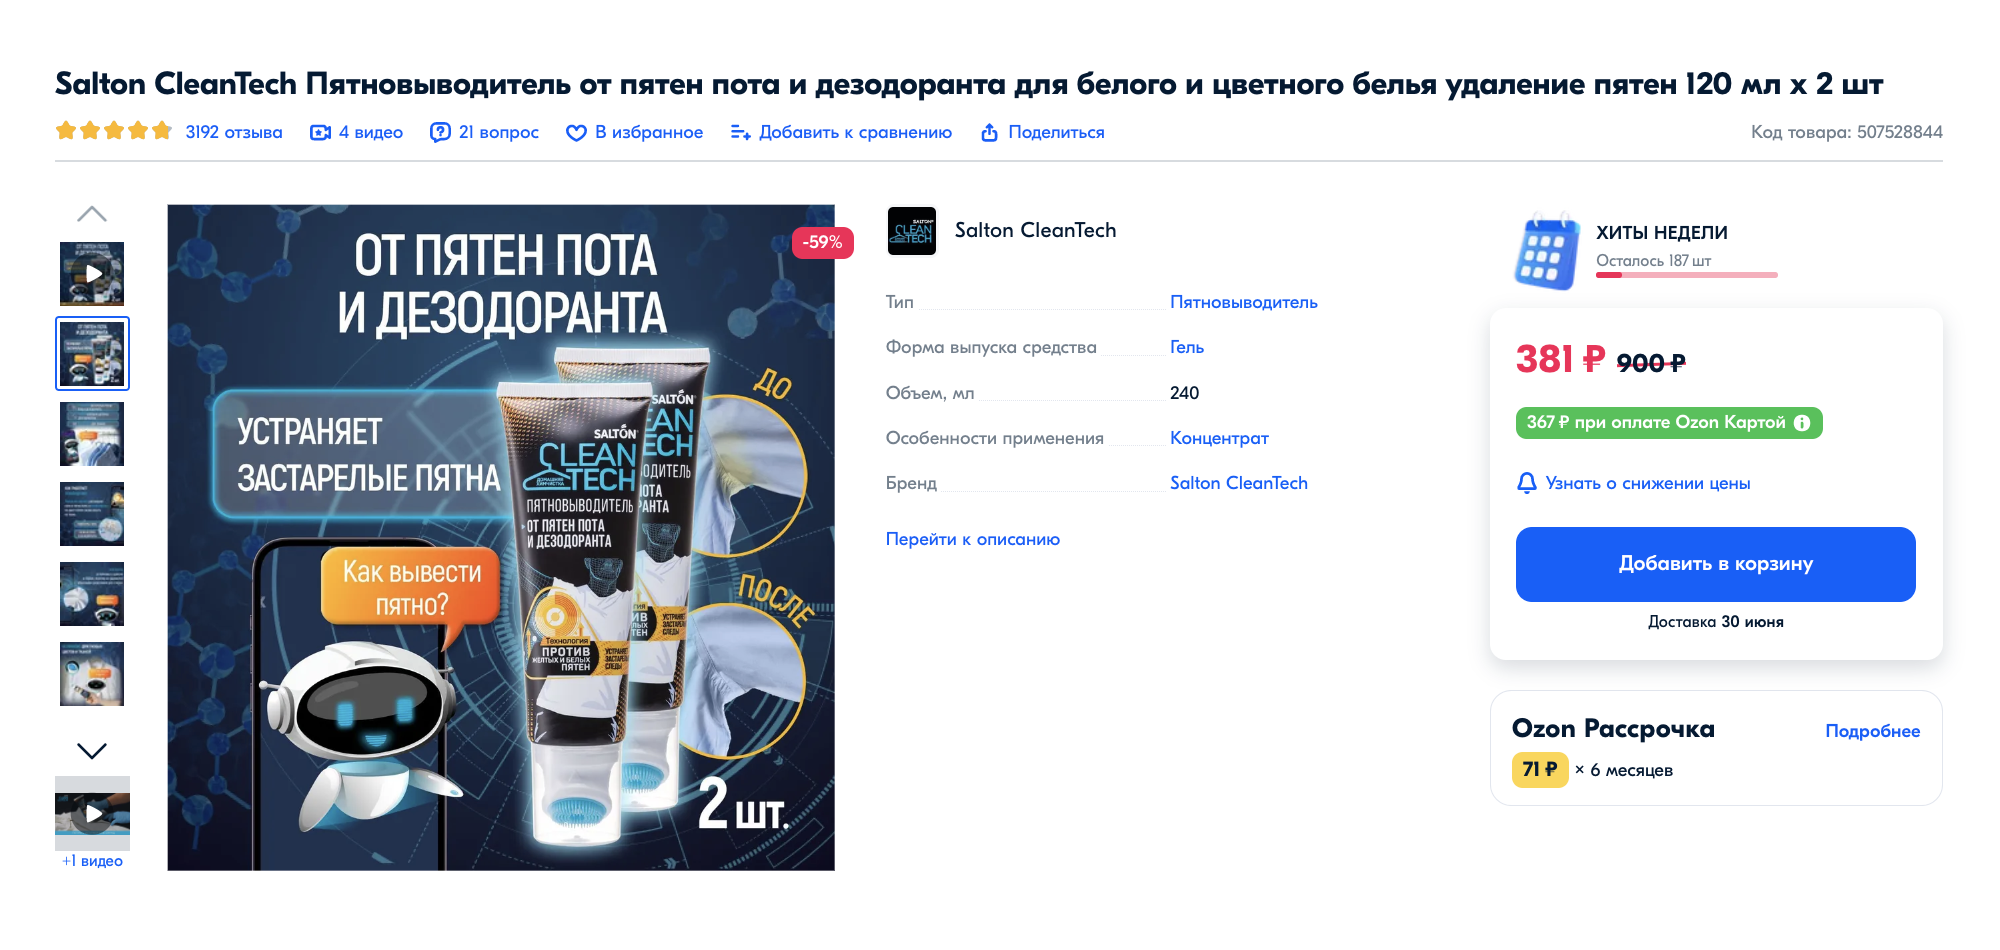 Специальный пятновыводитель, который убирает пятна от пота и дезодоранта. Источник: ozon.ru